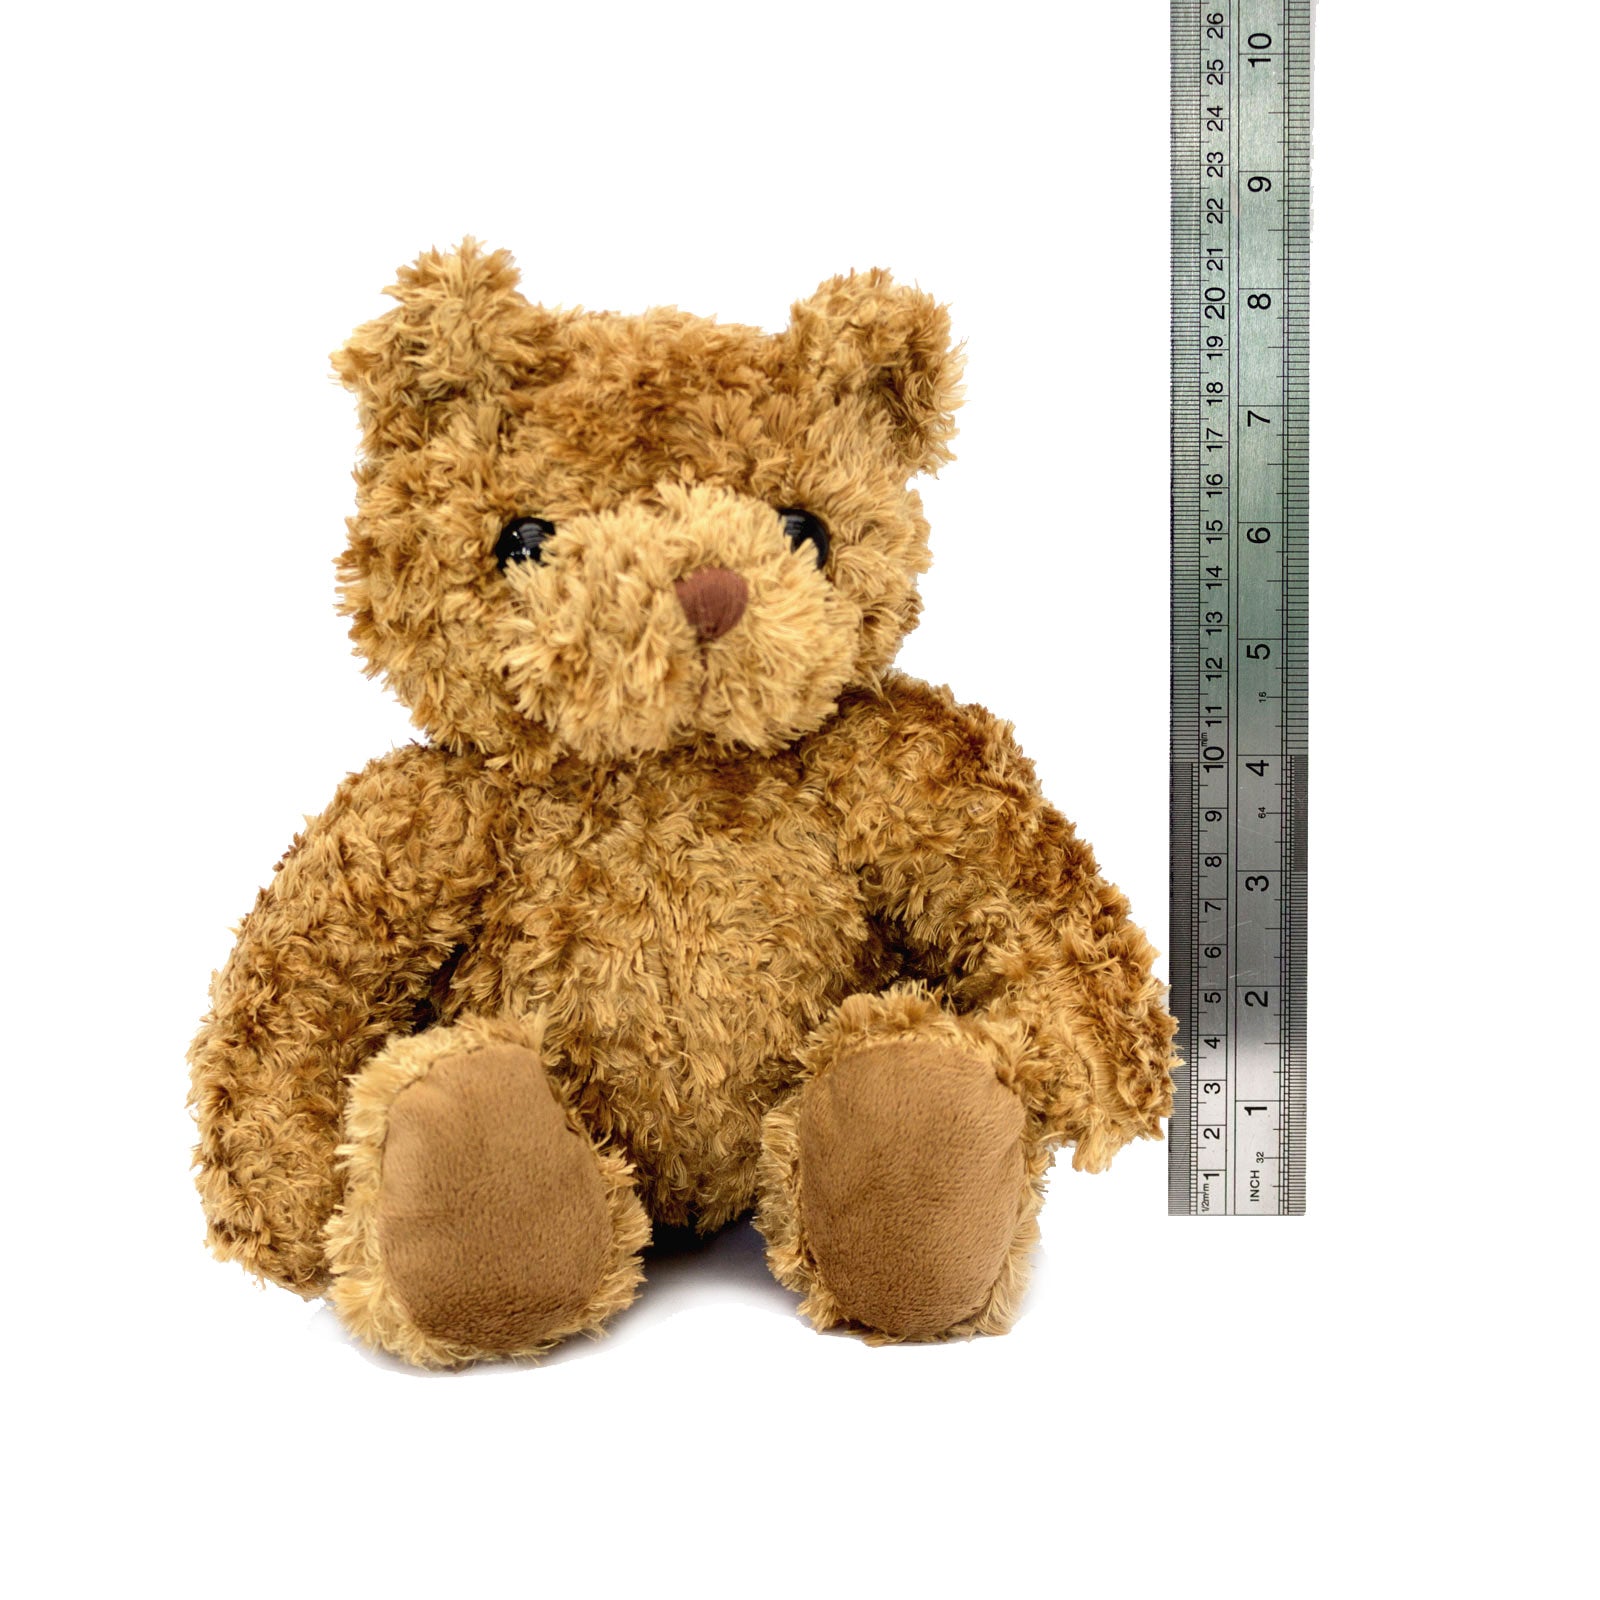 Get Well Soon Daquan - Teddy Bear